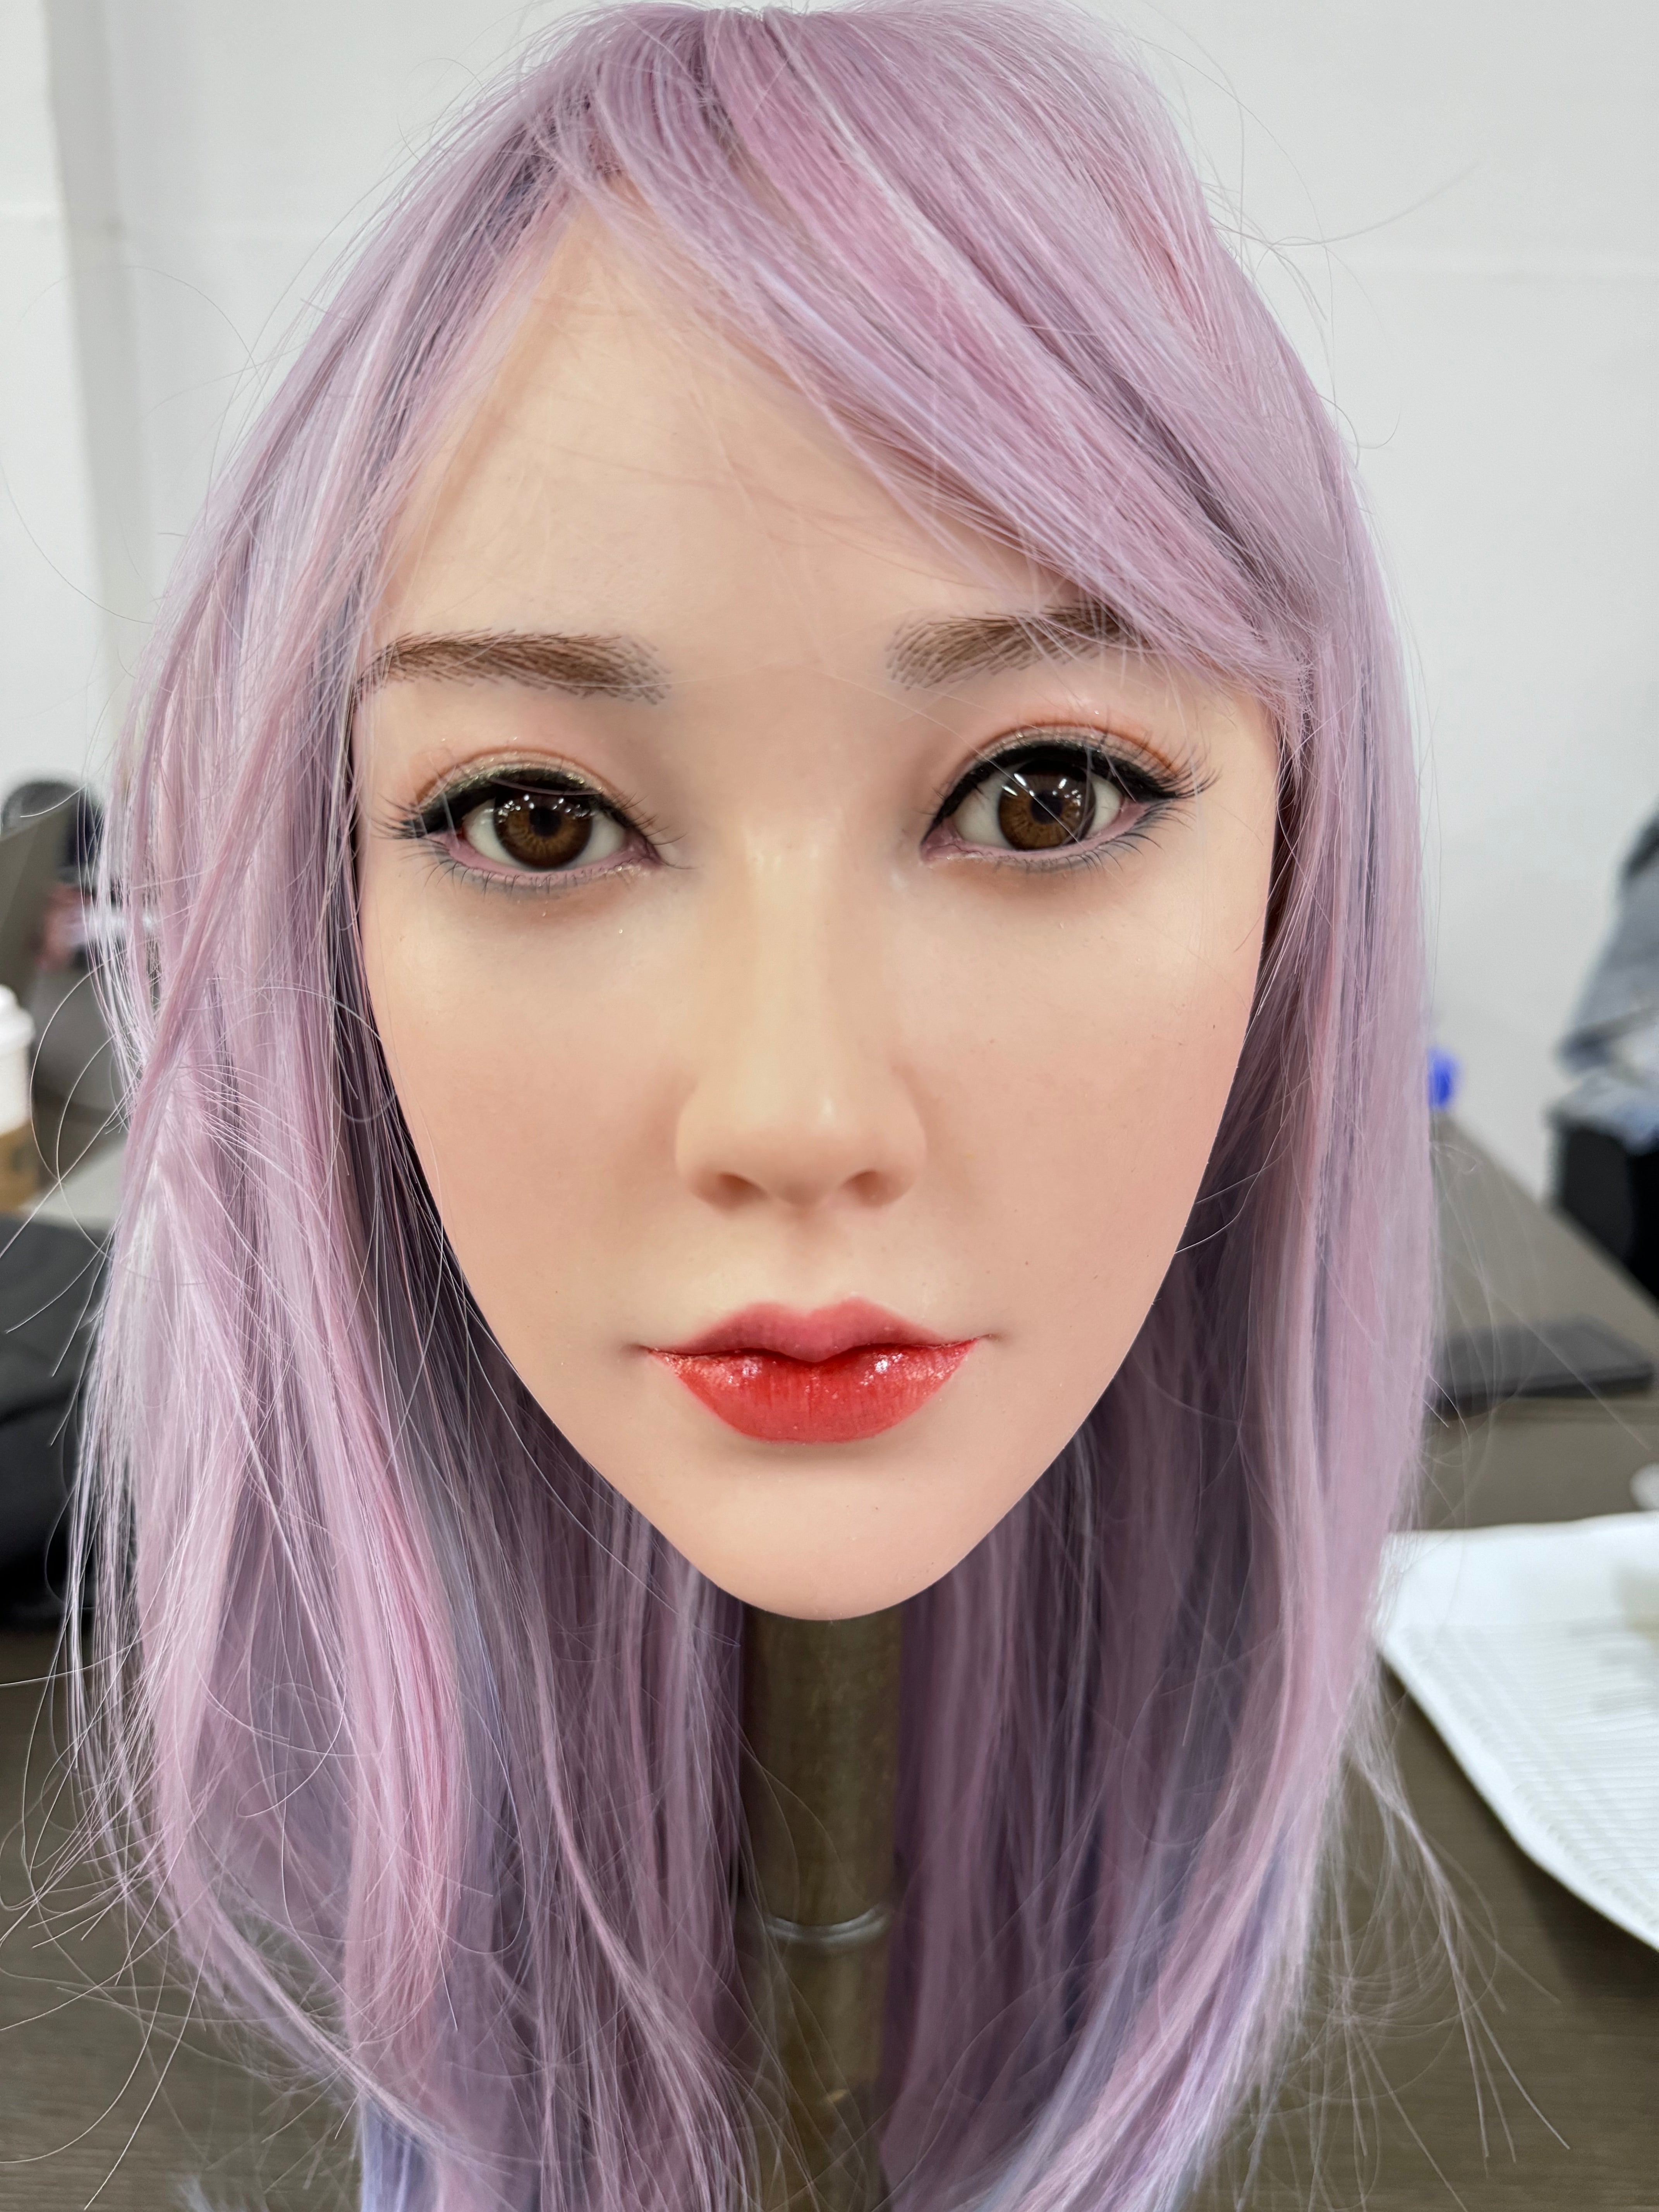 Fanreal Doll Head - Weiwei